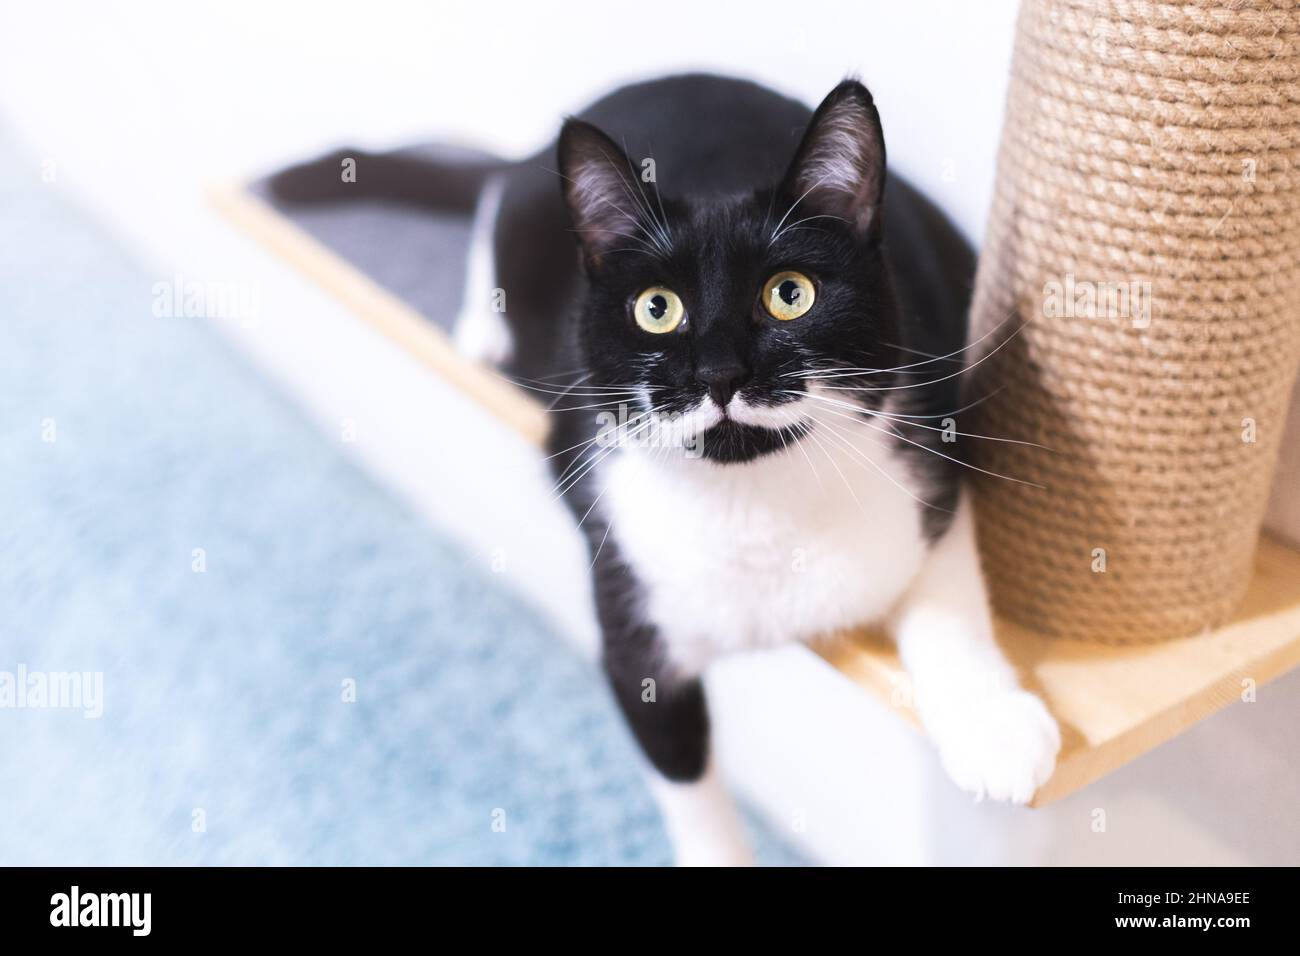 Un chat noir espiègle avec une moustache blanche est couché sur un lit d'animal avec un grattoir et regarde l'appareil photo. Portrait de chat avec une couleur inhabituelle Banque D'Images